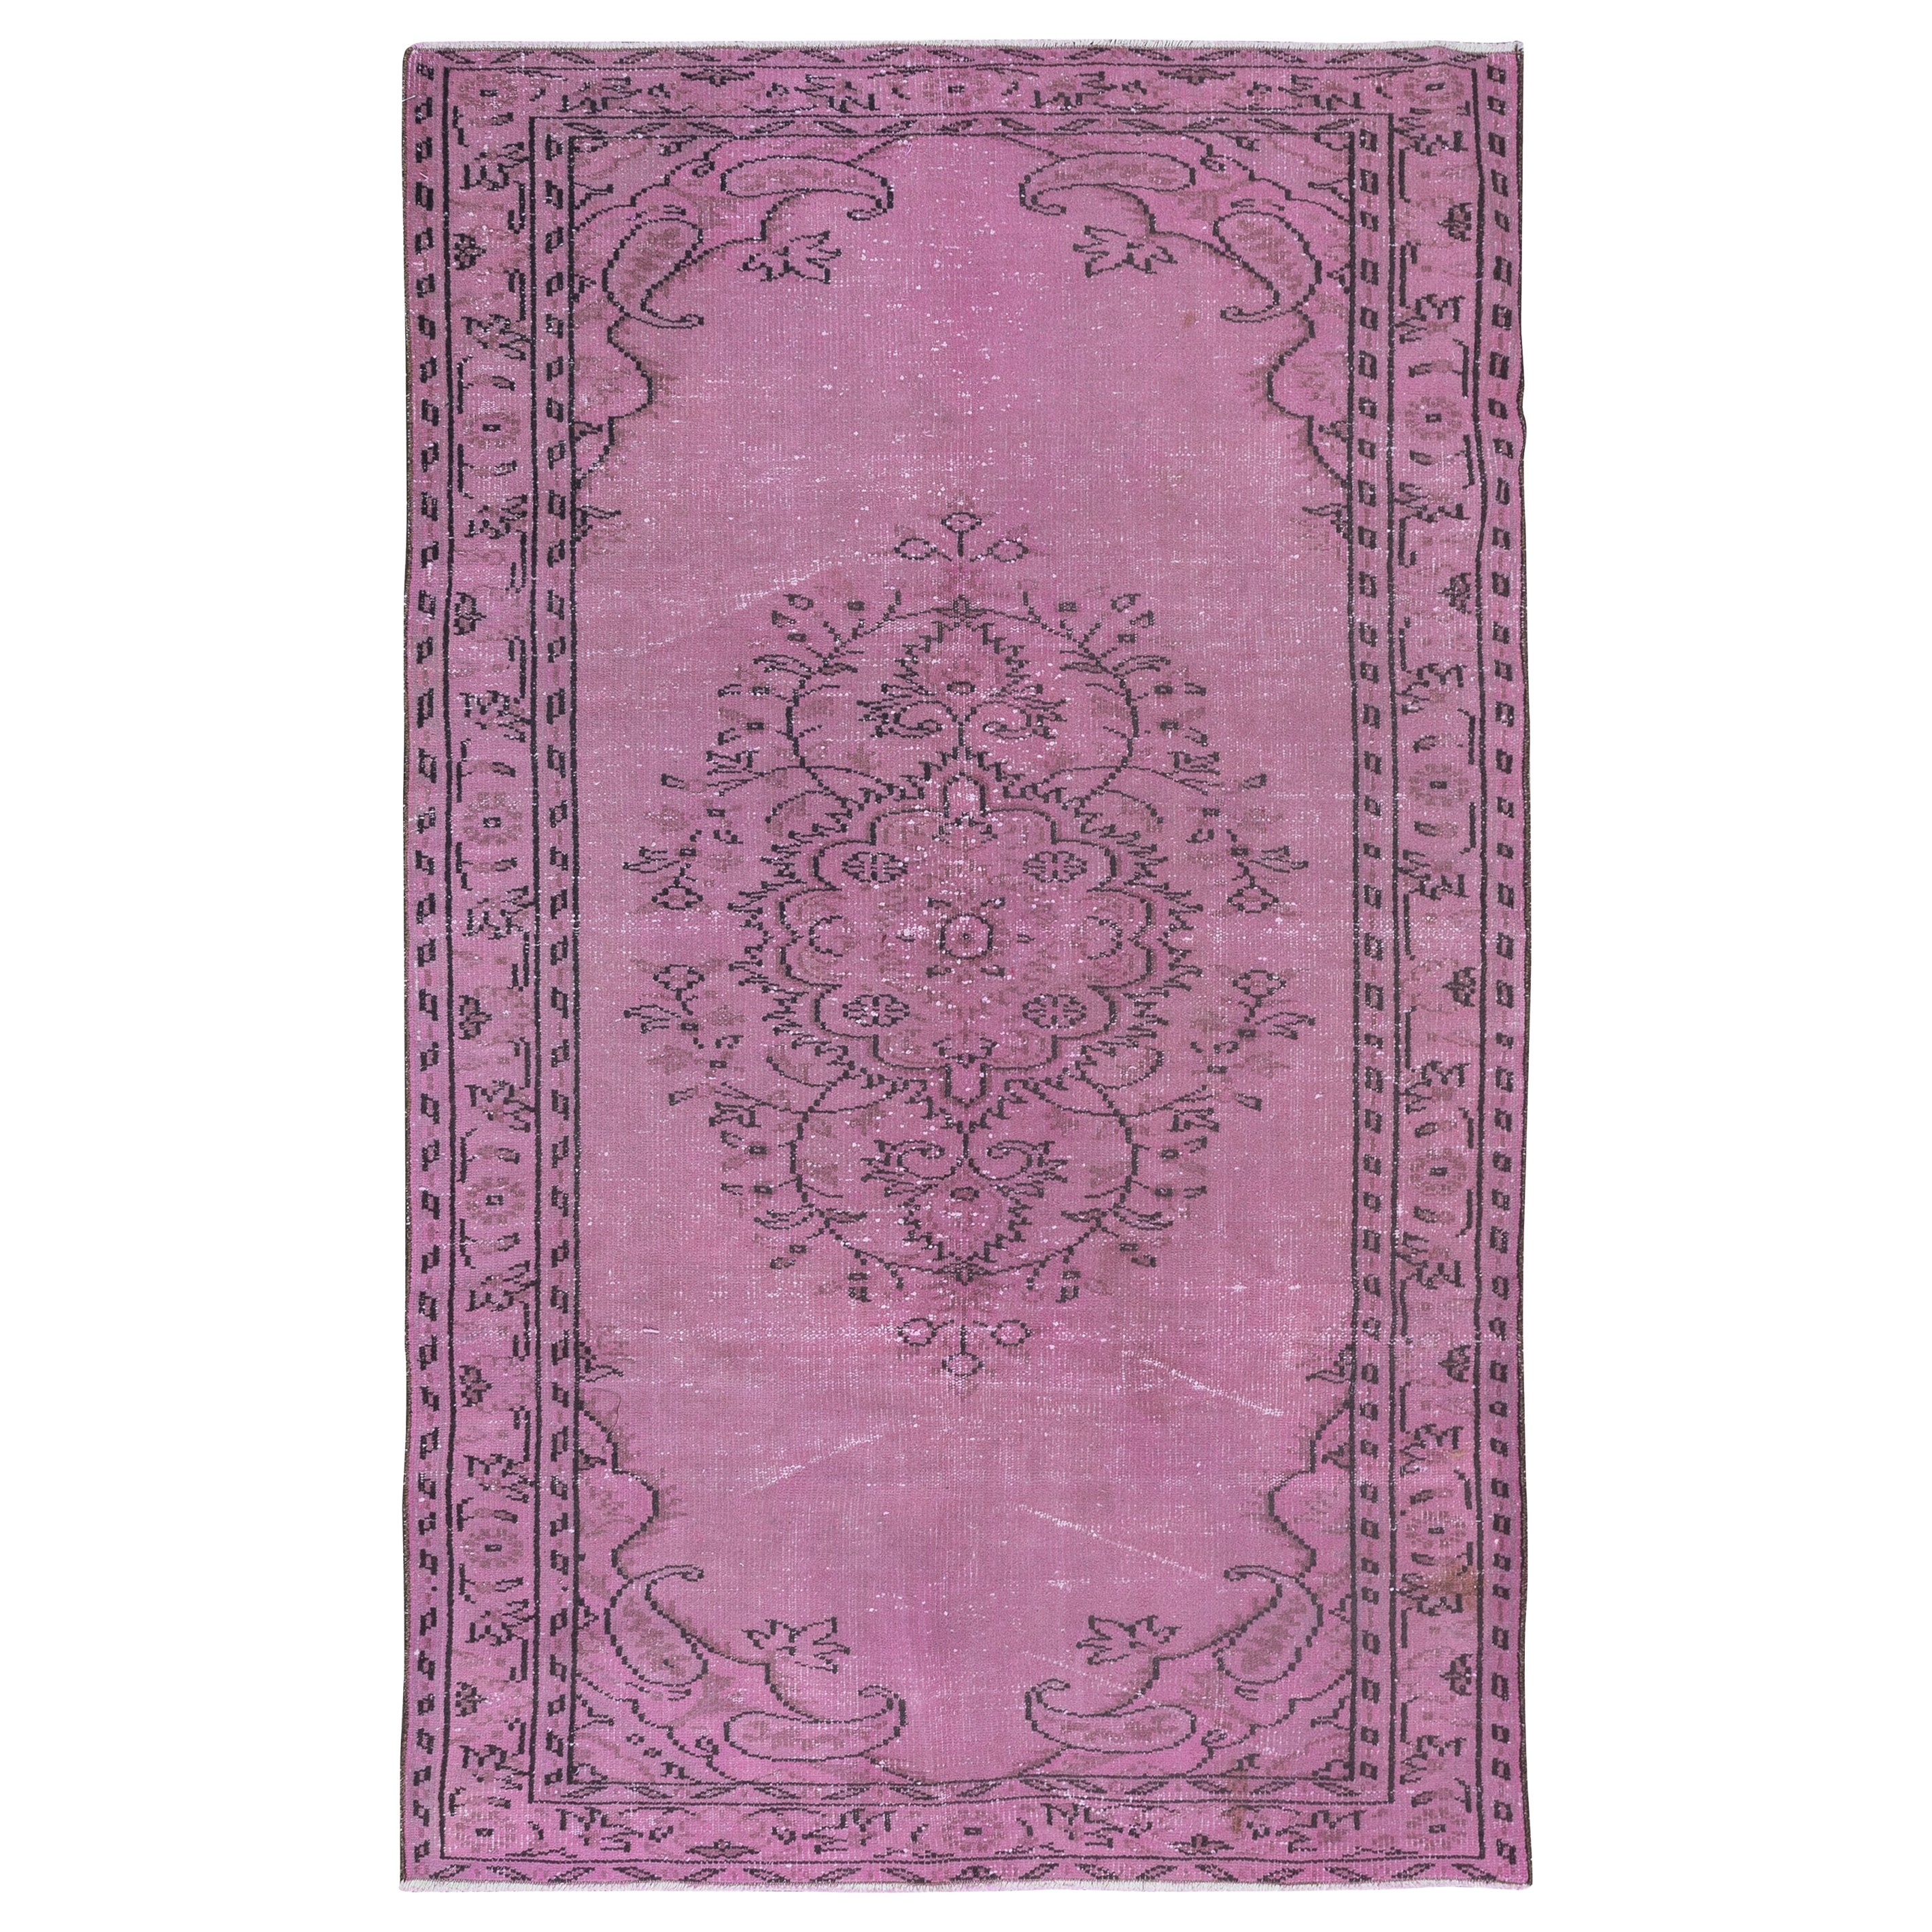 5x8.2 Ft Pink Rug for Modern Interiors, Handwoven and Handknotted in Turkey (Tapis rose pour intérieurs modernes, tissé et noué à la main en Turquie) en vente